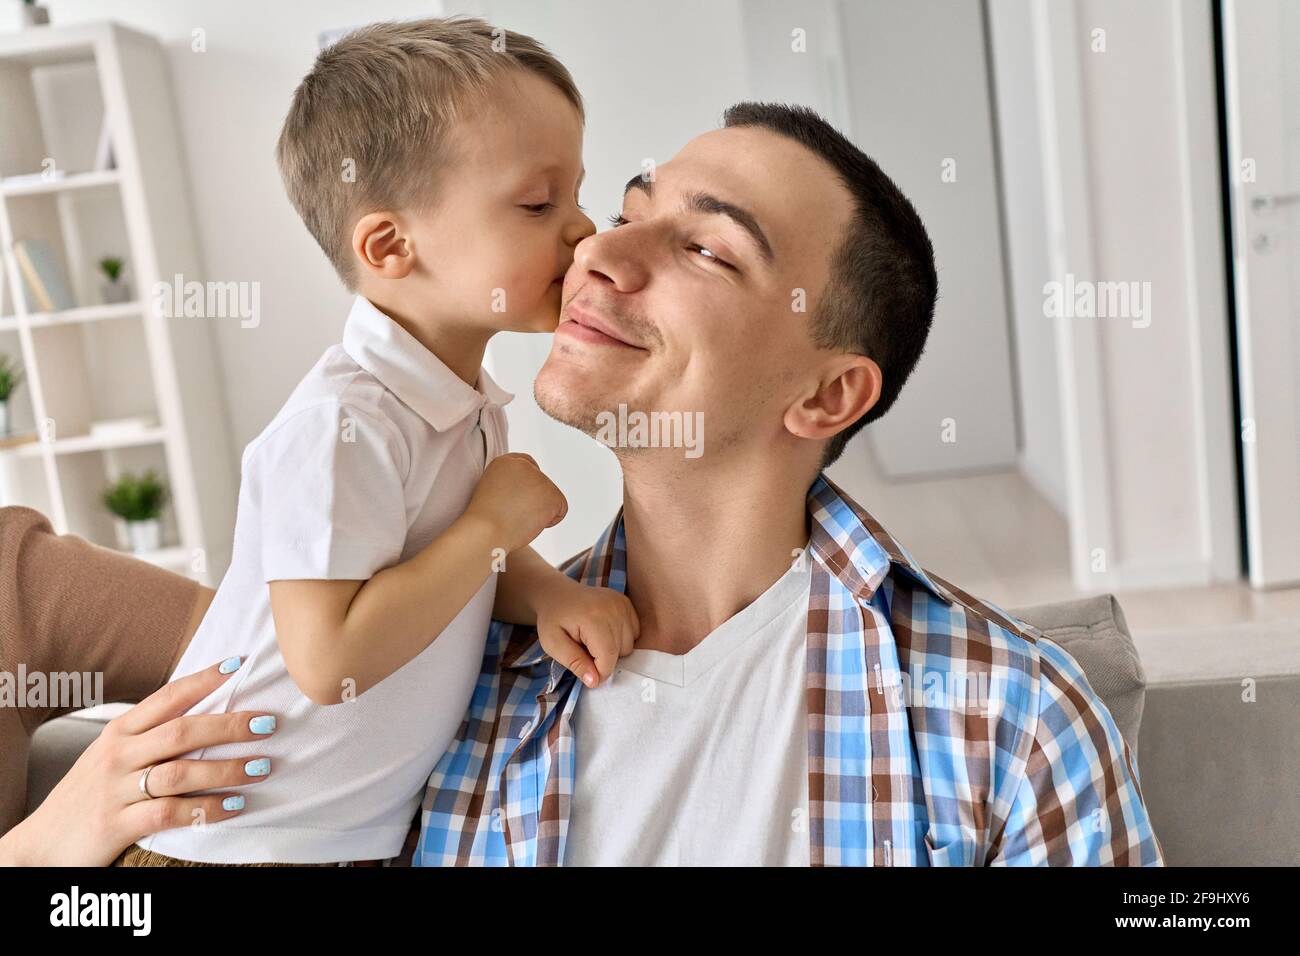 Carino bambino figlio baciare sorridendo papà su guancia a casa. Foto Stock